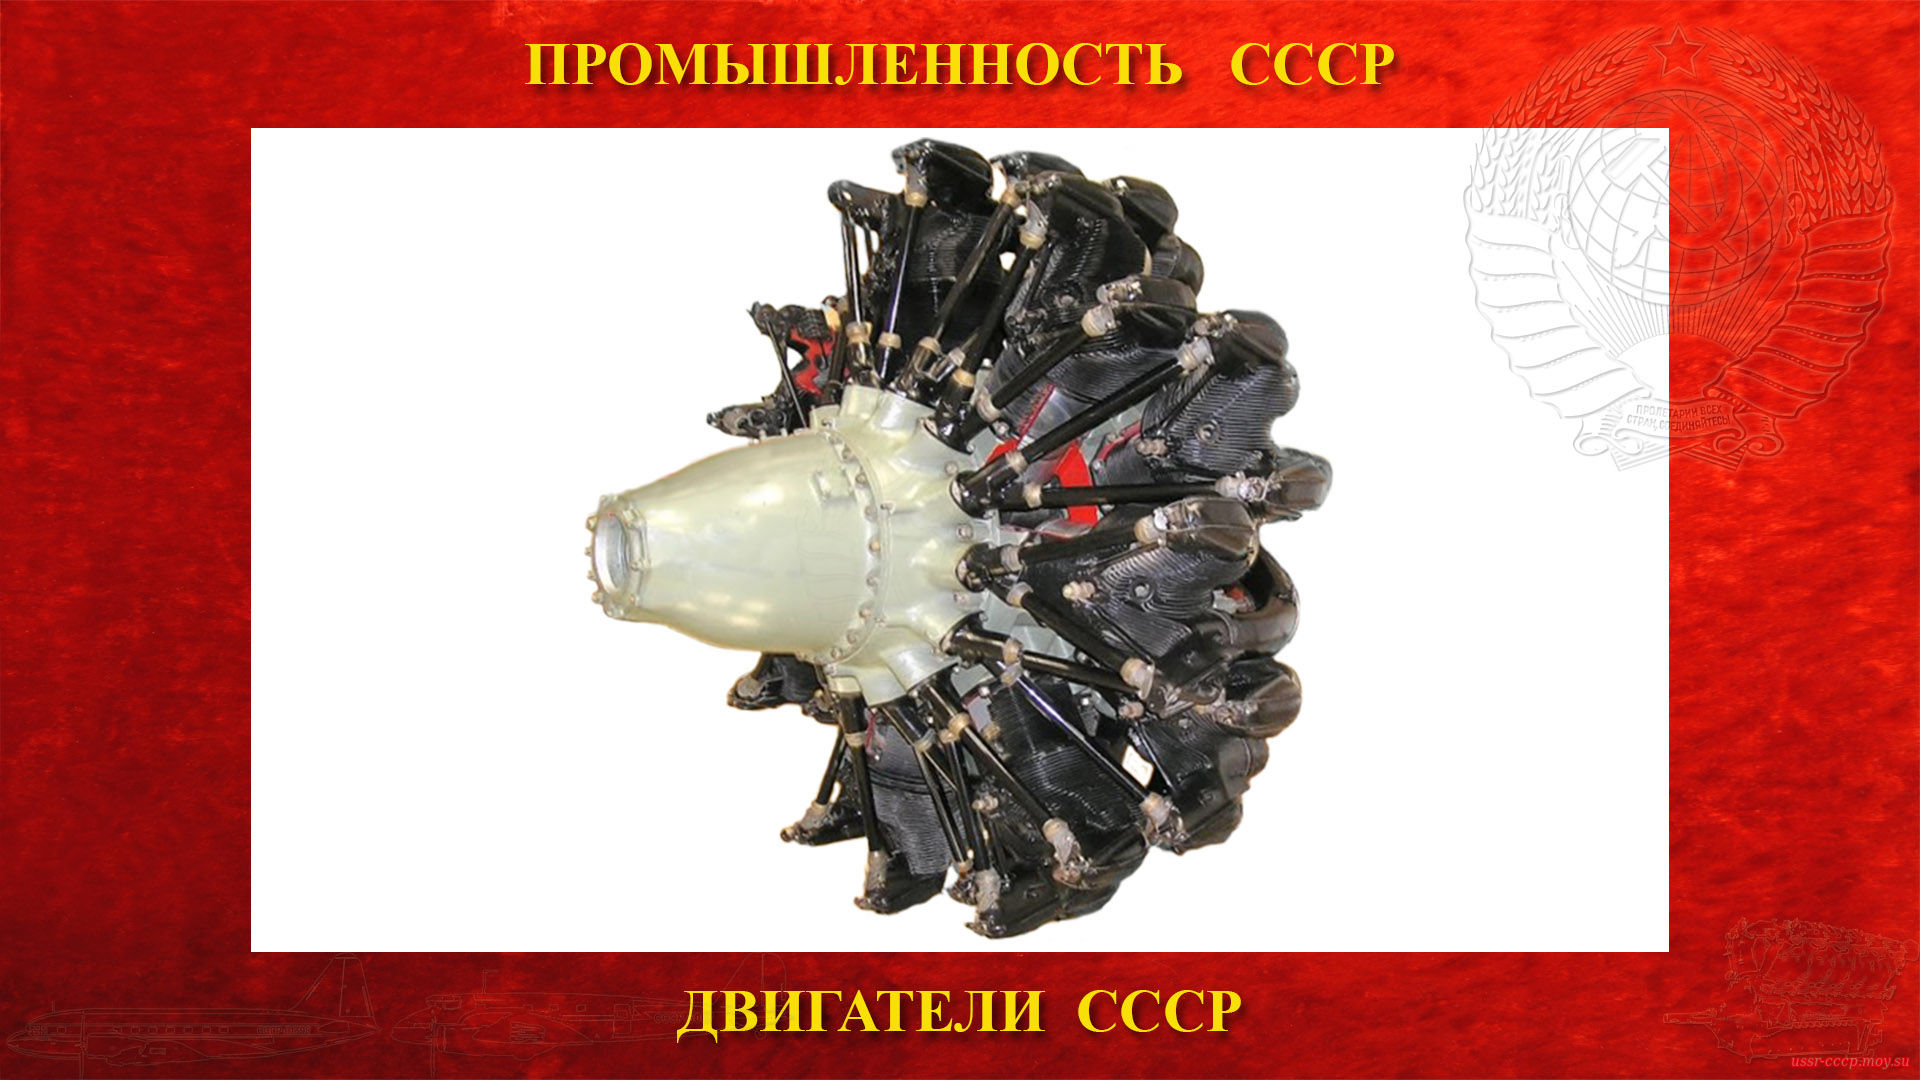 М-88 — Советский авиационный поршневой двигатель СССР (повествование)